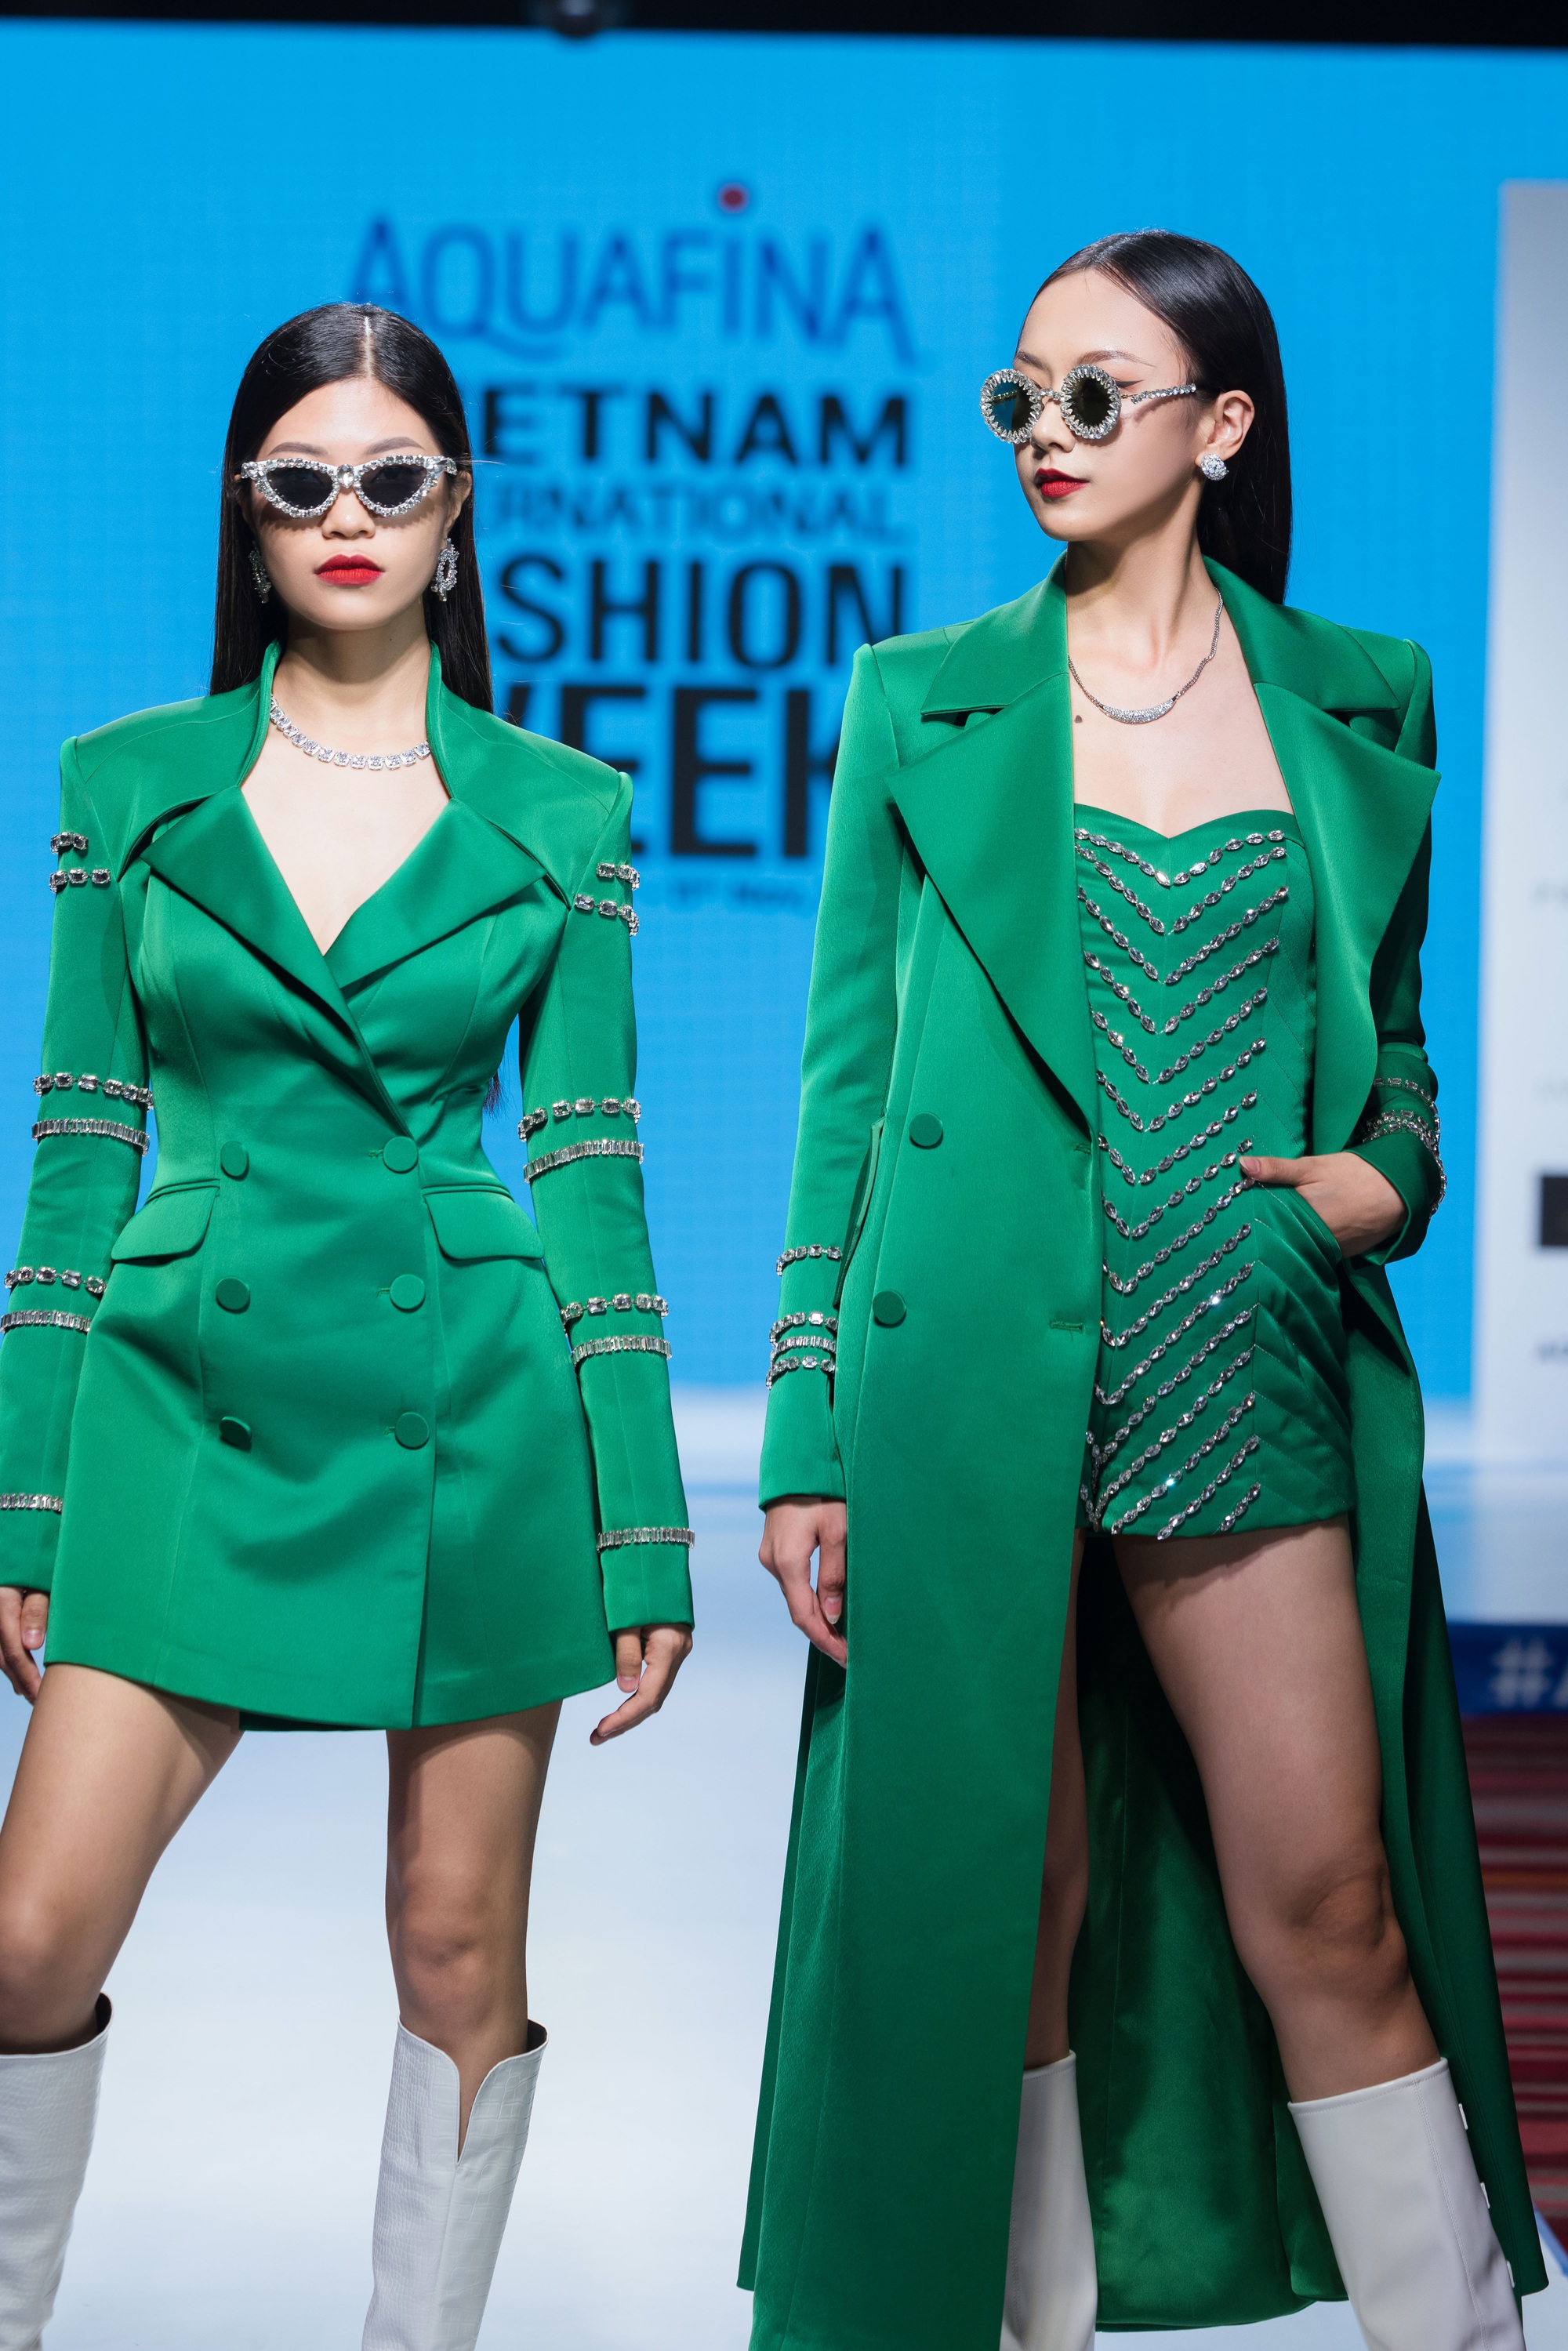 16 nhà thiết kế, thương hiệu sẽ tham dự Aquafina Tuần lễ thời trang Quốc tế Việt Nam - Ảnh 5.